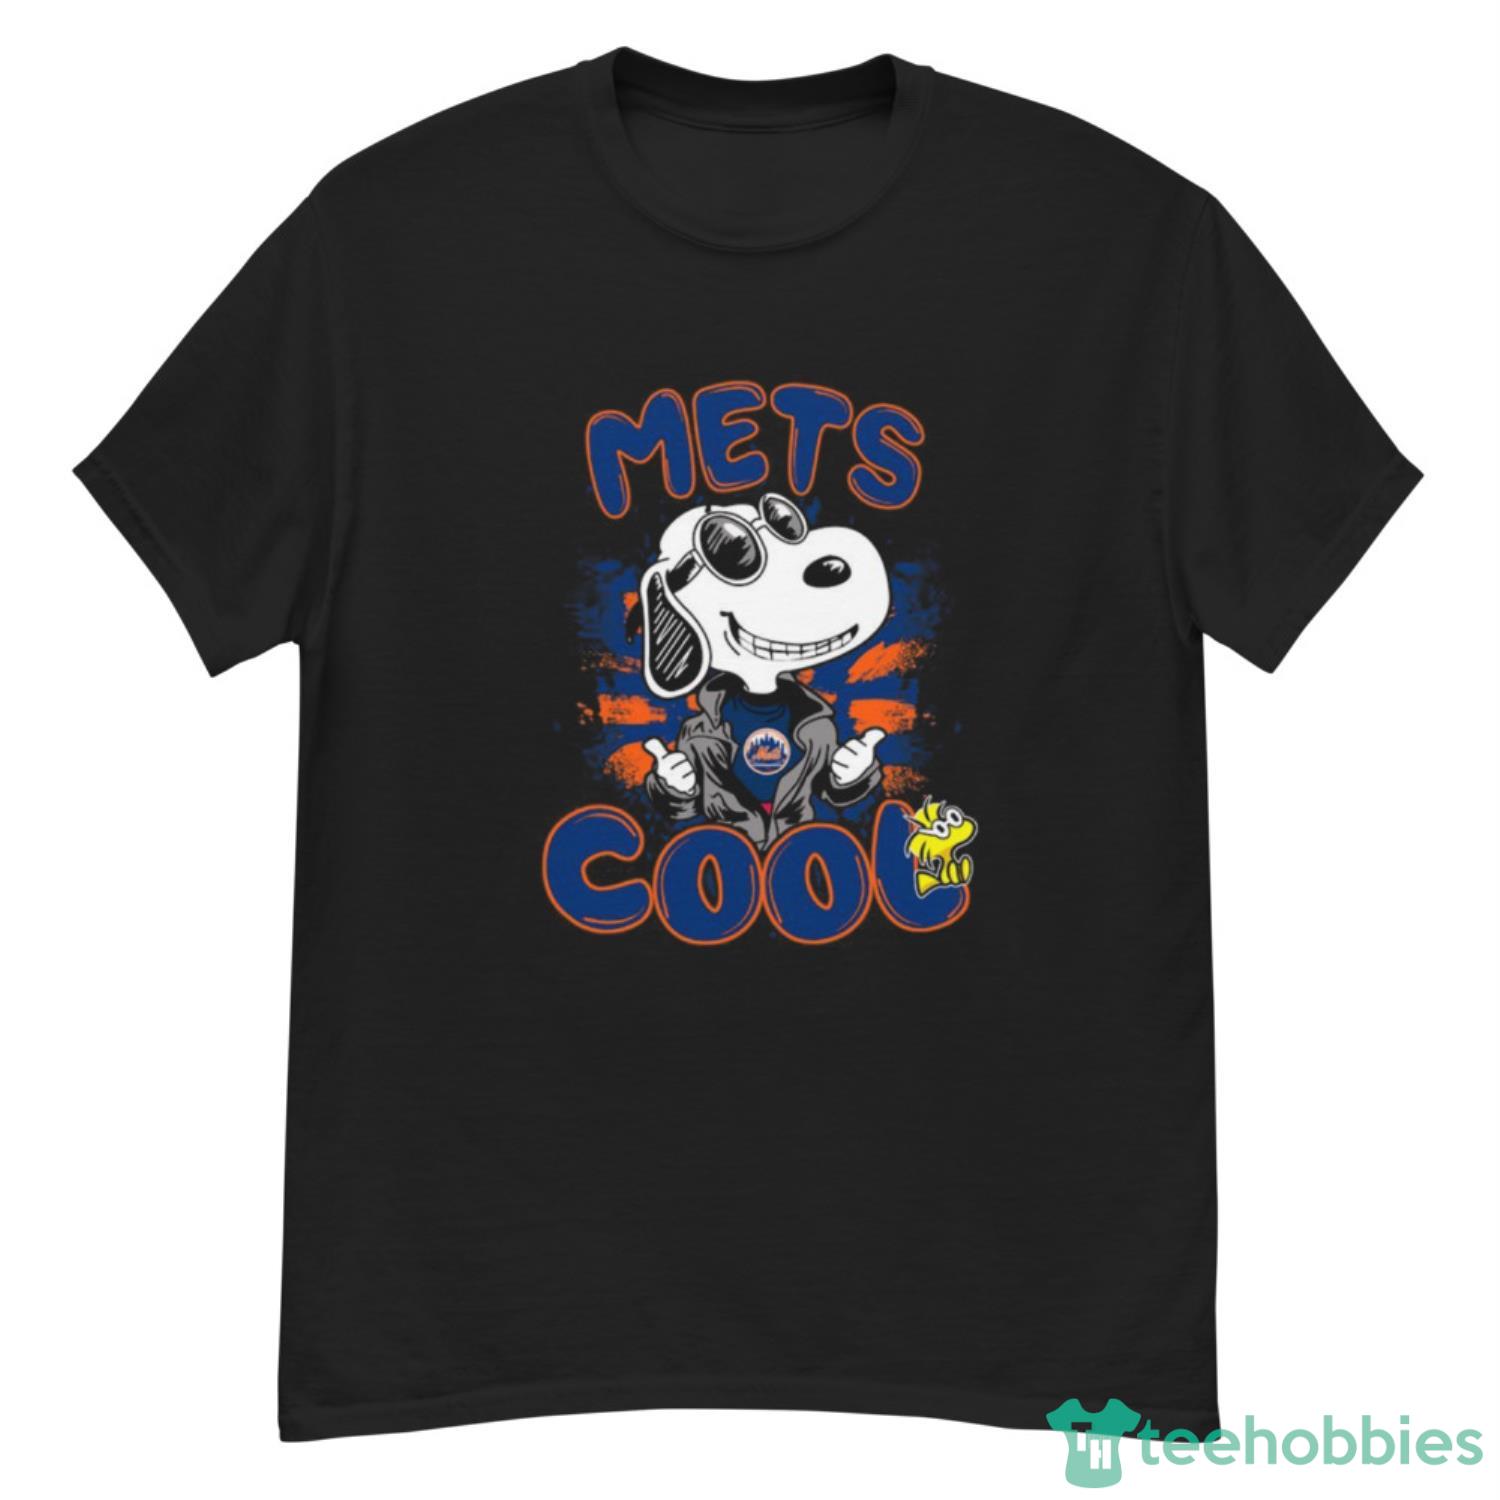 MLB Baseball New York Mets Cool Snoopy Shirt T Shirt - G500 Men’s Classic T-Shirt